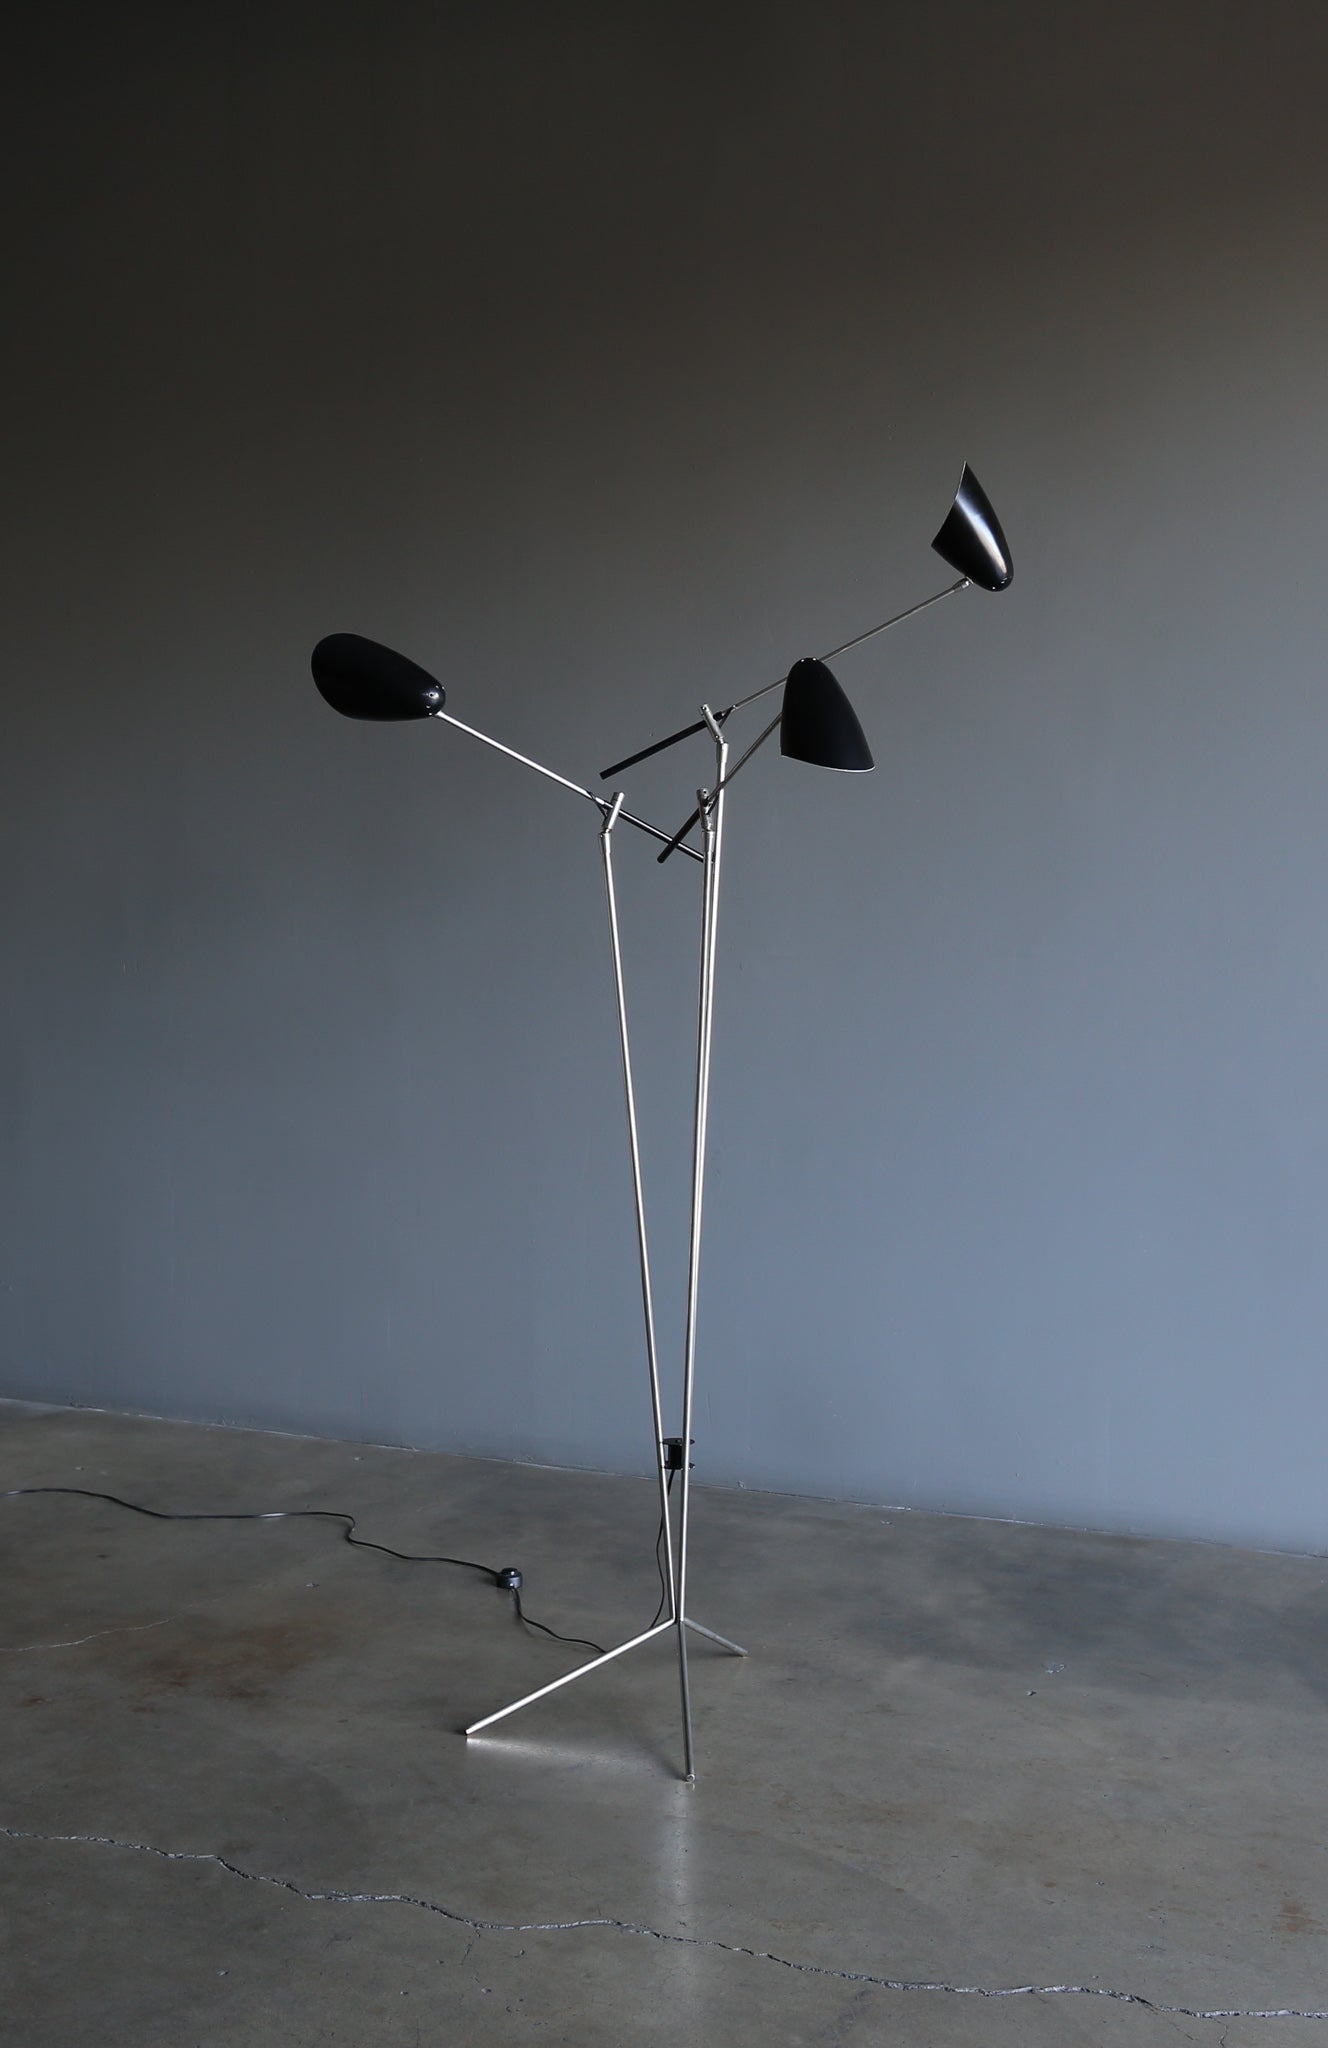 = SOLD = David Weeks Studio No. 303 Tripod Floor Lamp